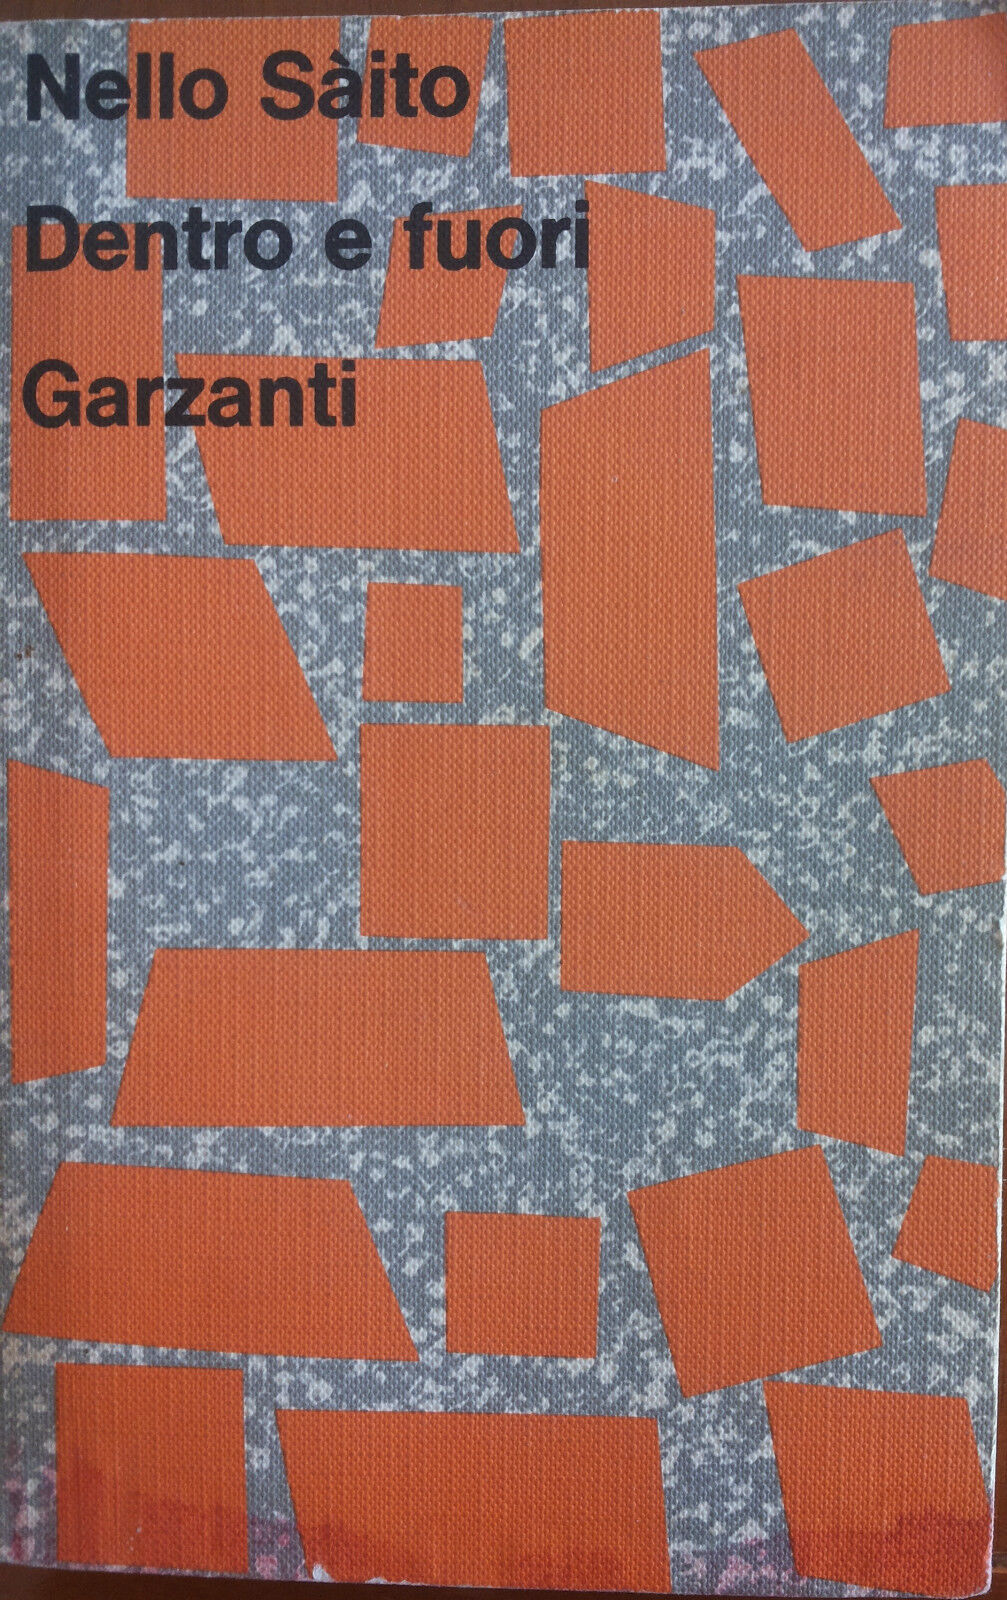 Dentro e fuori - Nello Saito - Garzanti,1973 - A